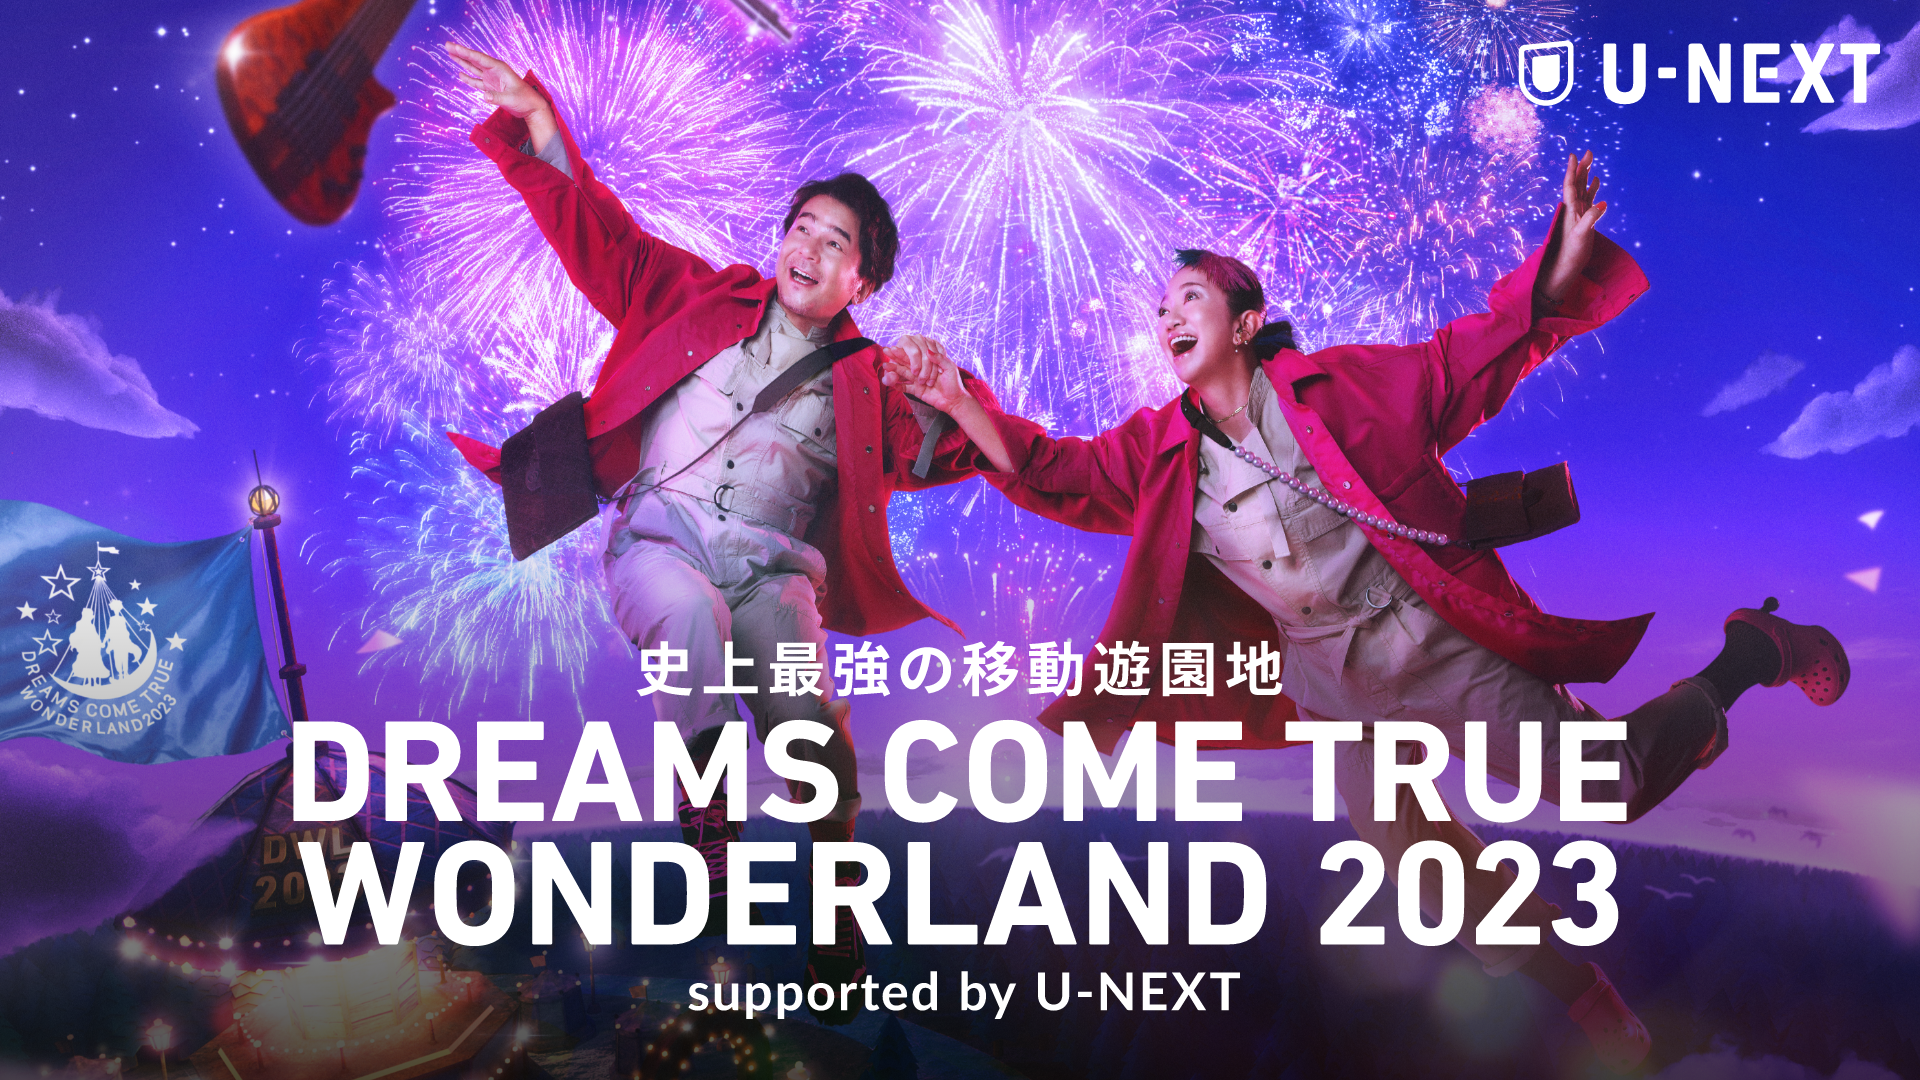 『史上最強の移動遊園地 DREAMS COME TRUE WONDERLAND 2023 supported by U-NEXT』がU-NEXTで独占配信決定！ライヴチケットが当たるキャンペーンも実施